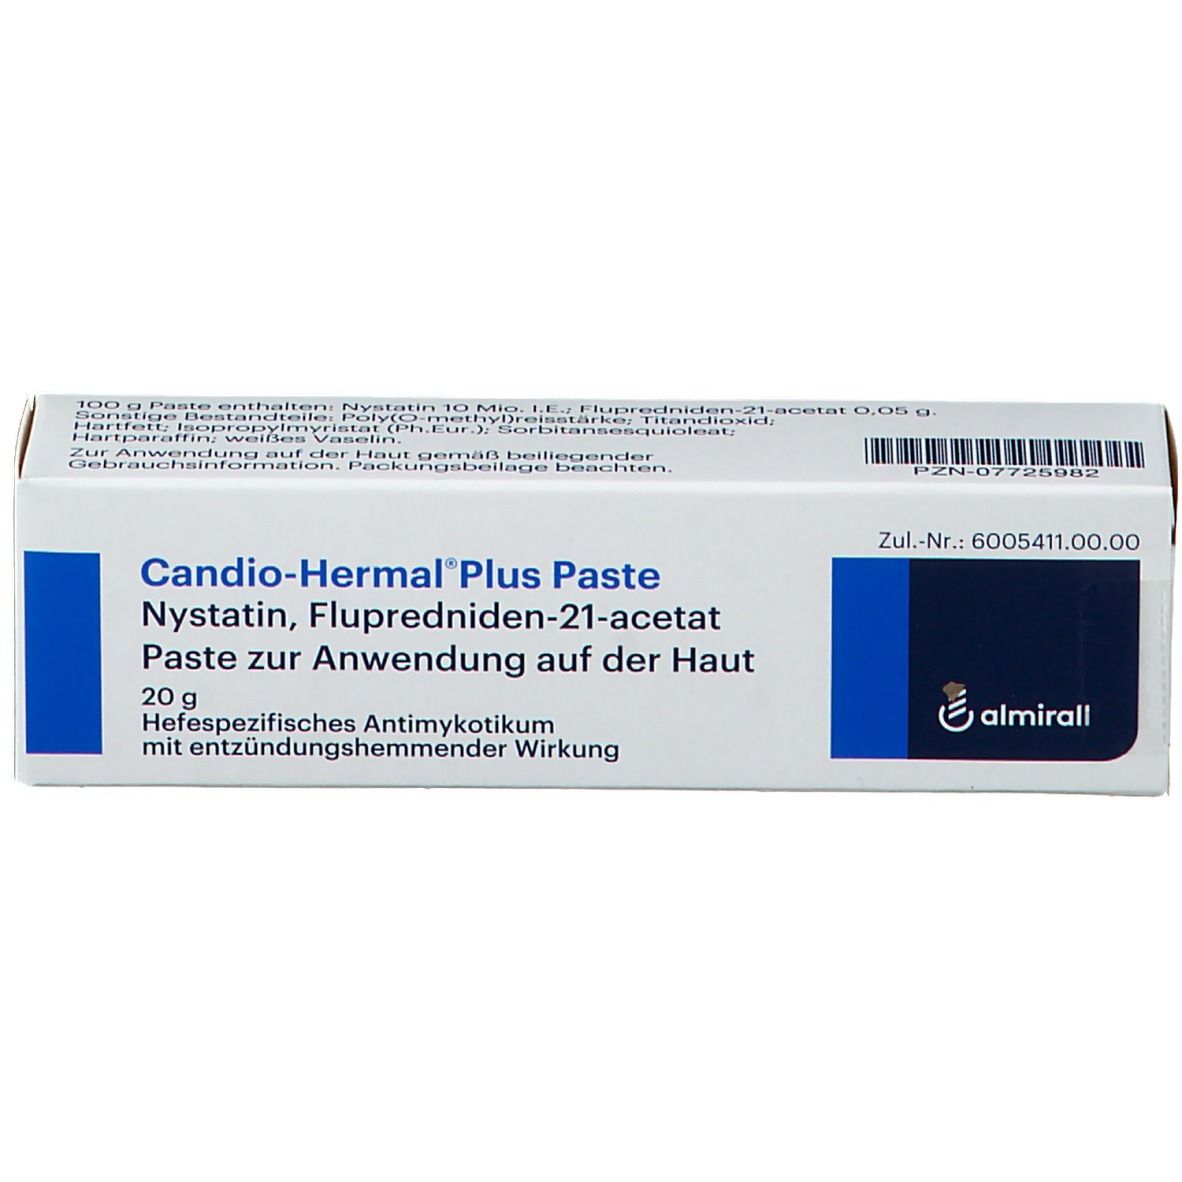 Candio-Hermal® Plus Paste